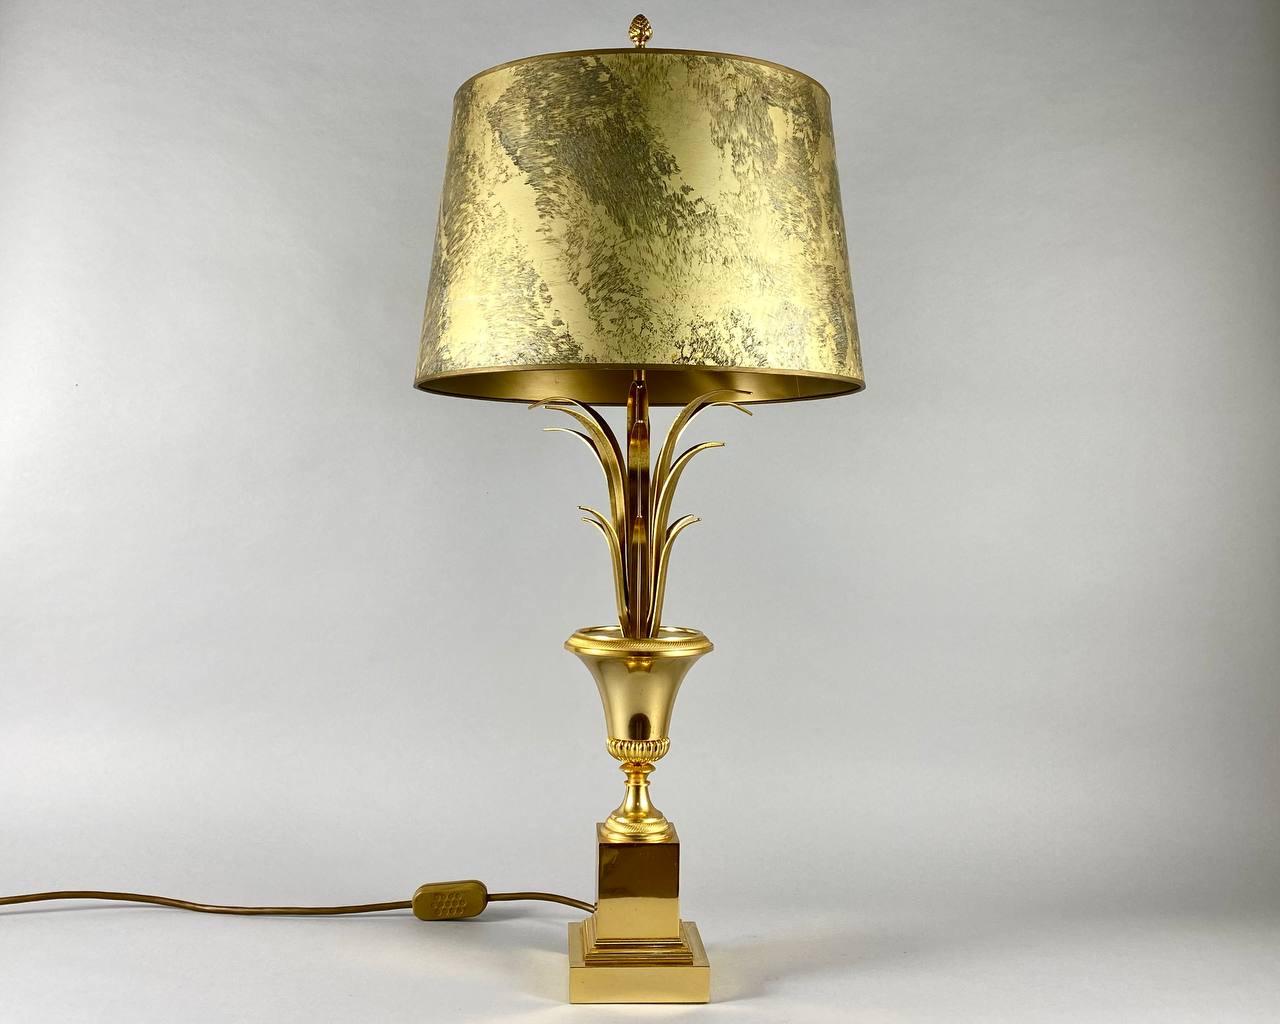 Belgian Designer Gilt Brass Table Lamp by Maison Charles for Boulanger, 1980s, Belgium